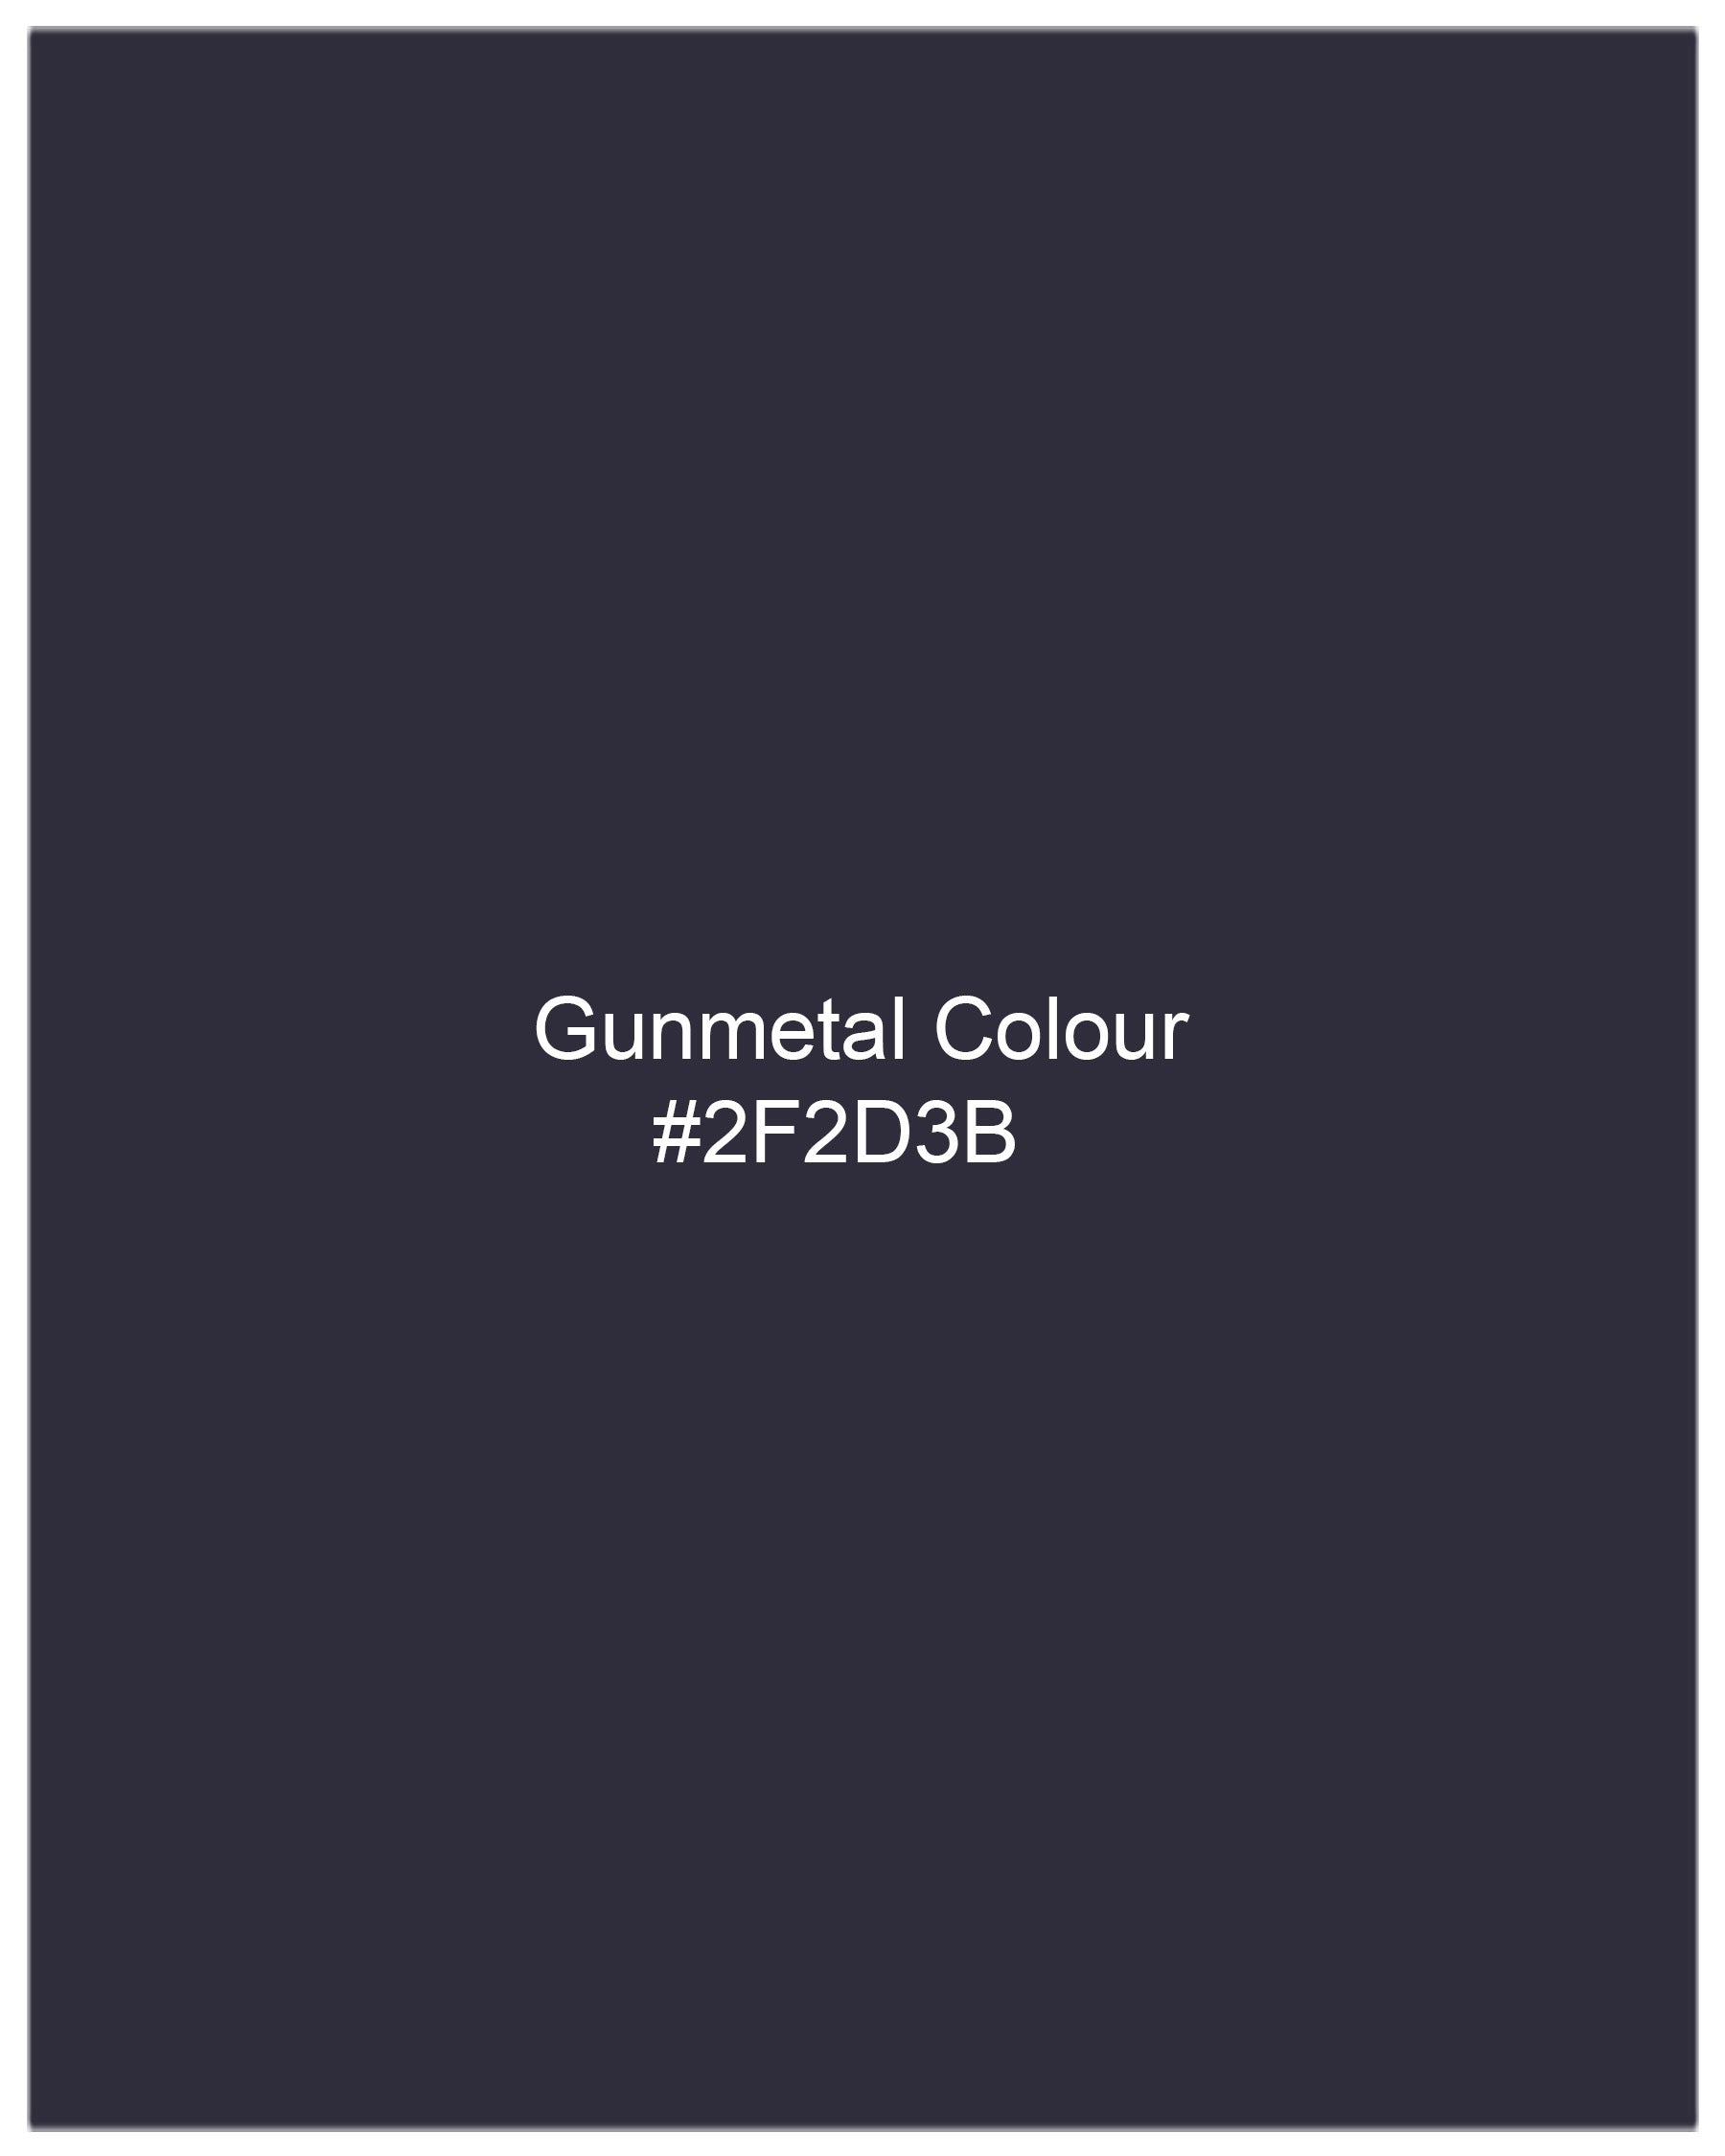 Gunmetal Navy Blue Waistcoat V1997-36, V1997-38, V1997-40, V1997-42, V1997-44, V1997-46, V1997-48, V1997-50, V1997-52, V1997-54, V1997-56, V1997-58, V1997-60